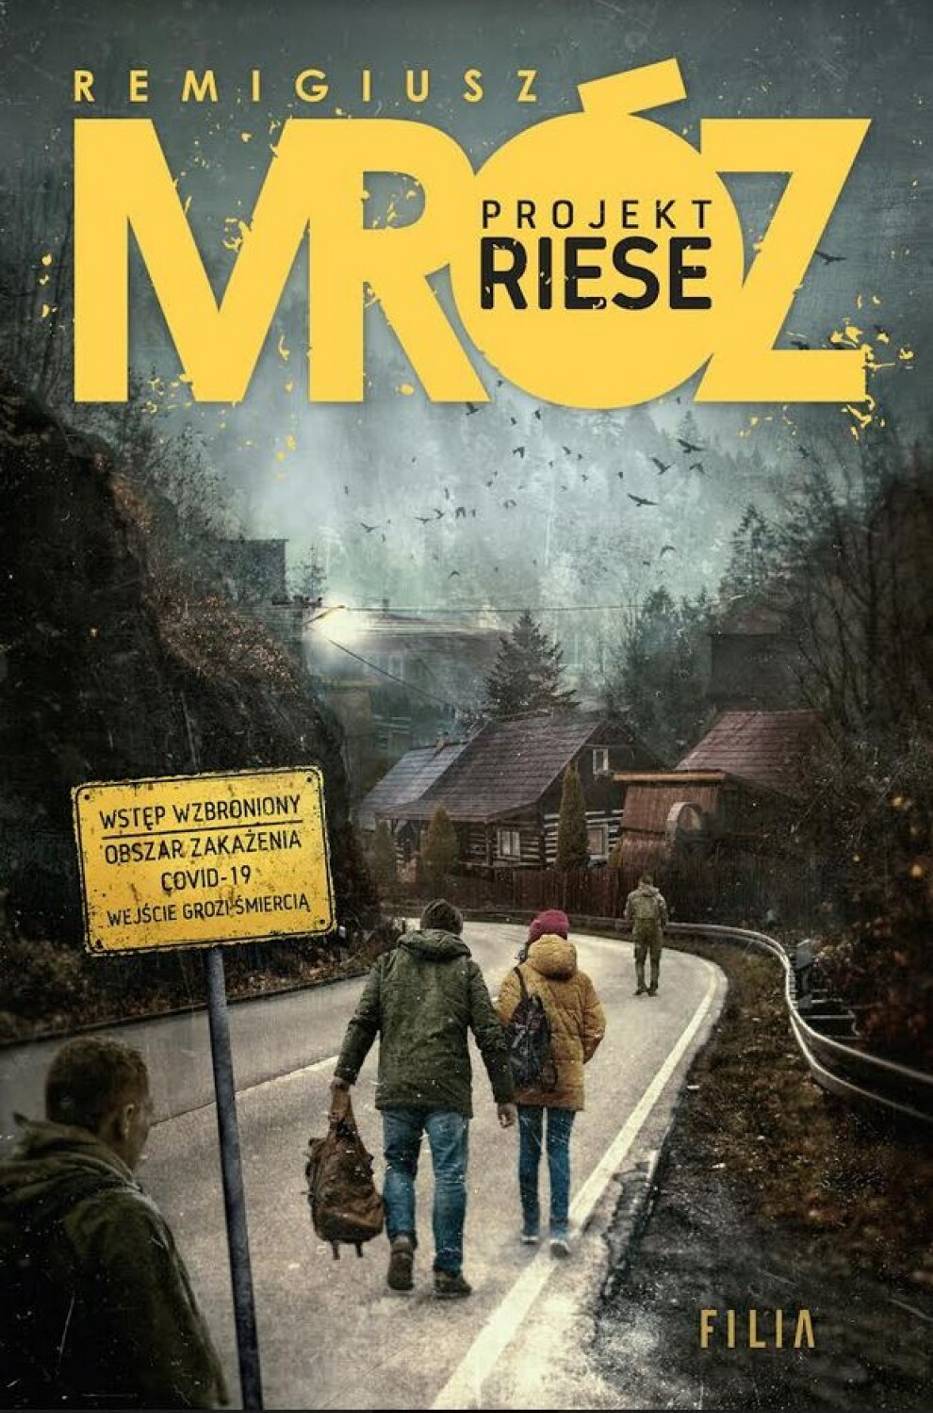 Nowa książka popularnego pisarza Remigiusza Mroza o Projekcie Riese. Kompleks Osówka w Głuszycy już w pierwszym rozdziale